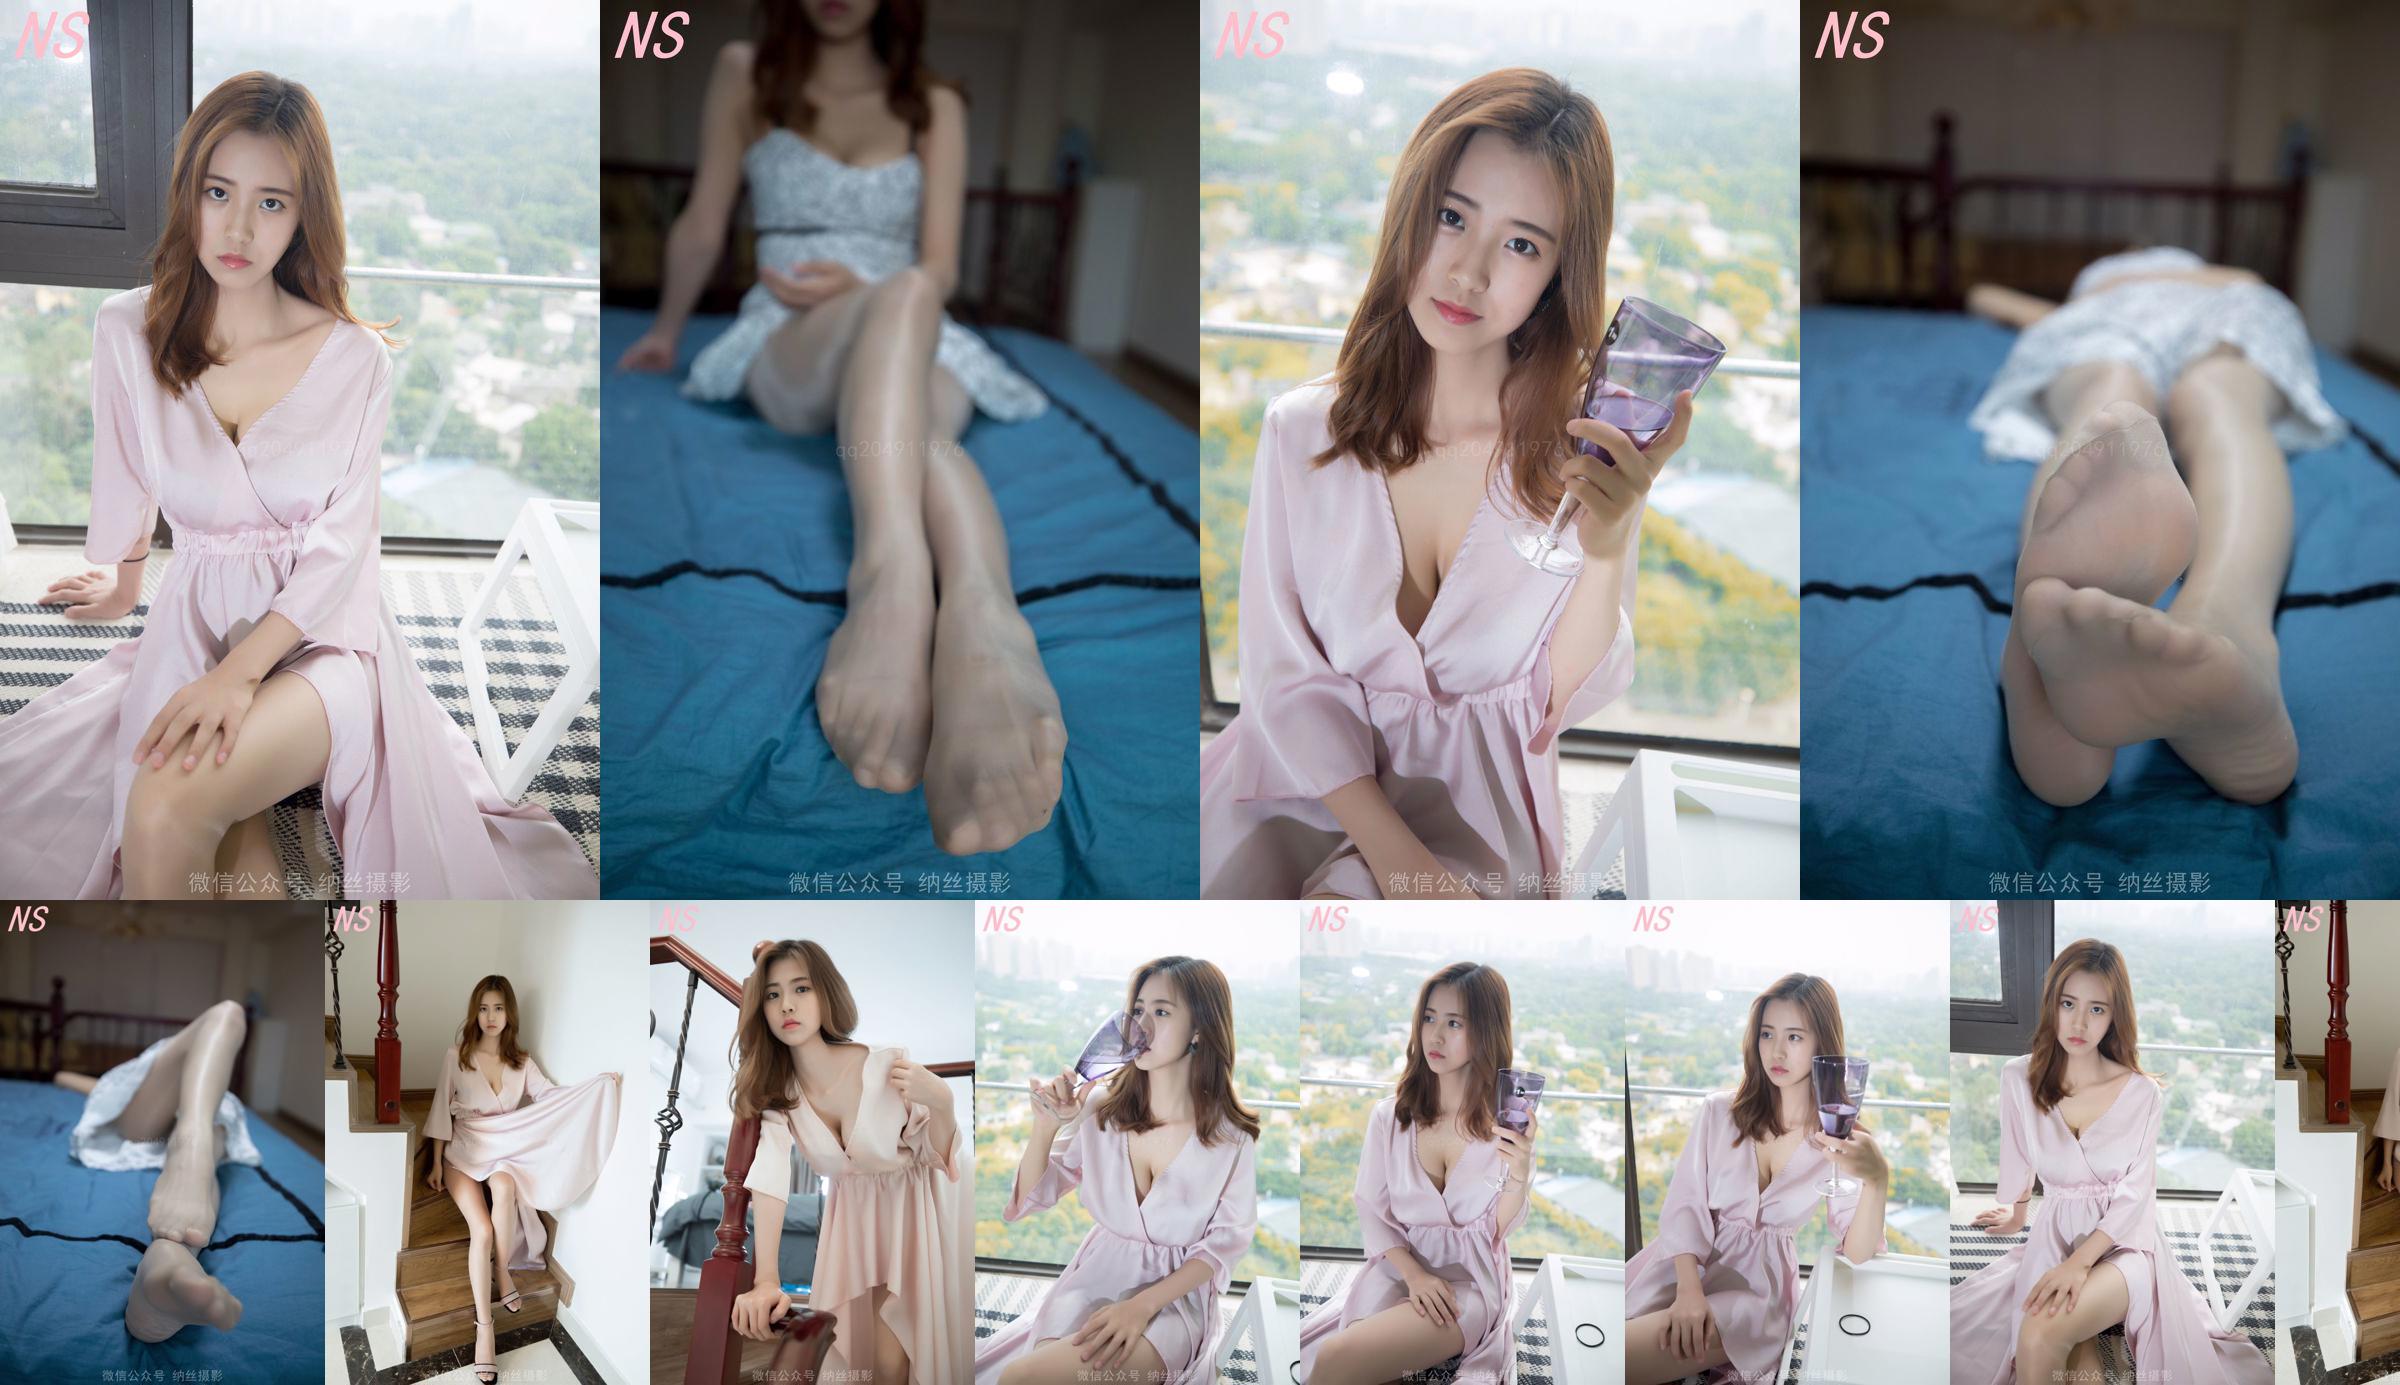 Beauty anchor Hanshuang "The Temptation of Pajamas" [Nasi Photography] No.7e4120 Page 1